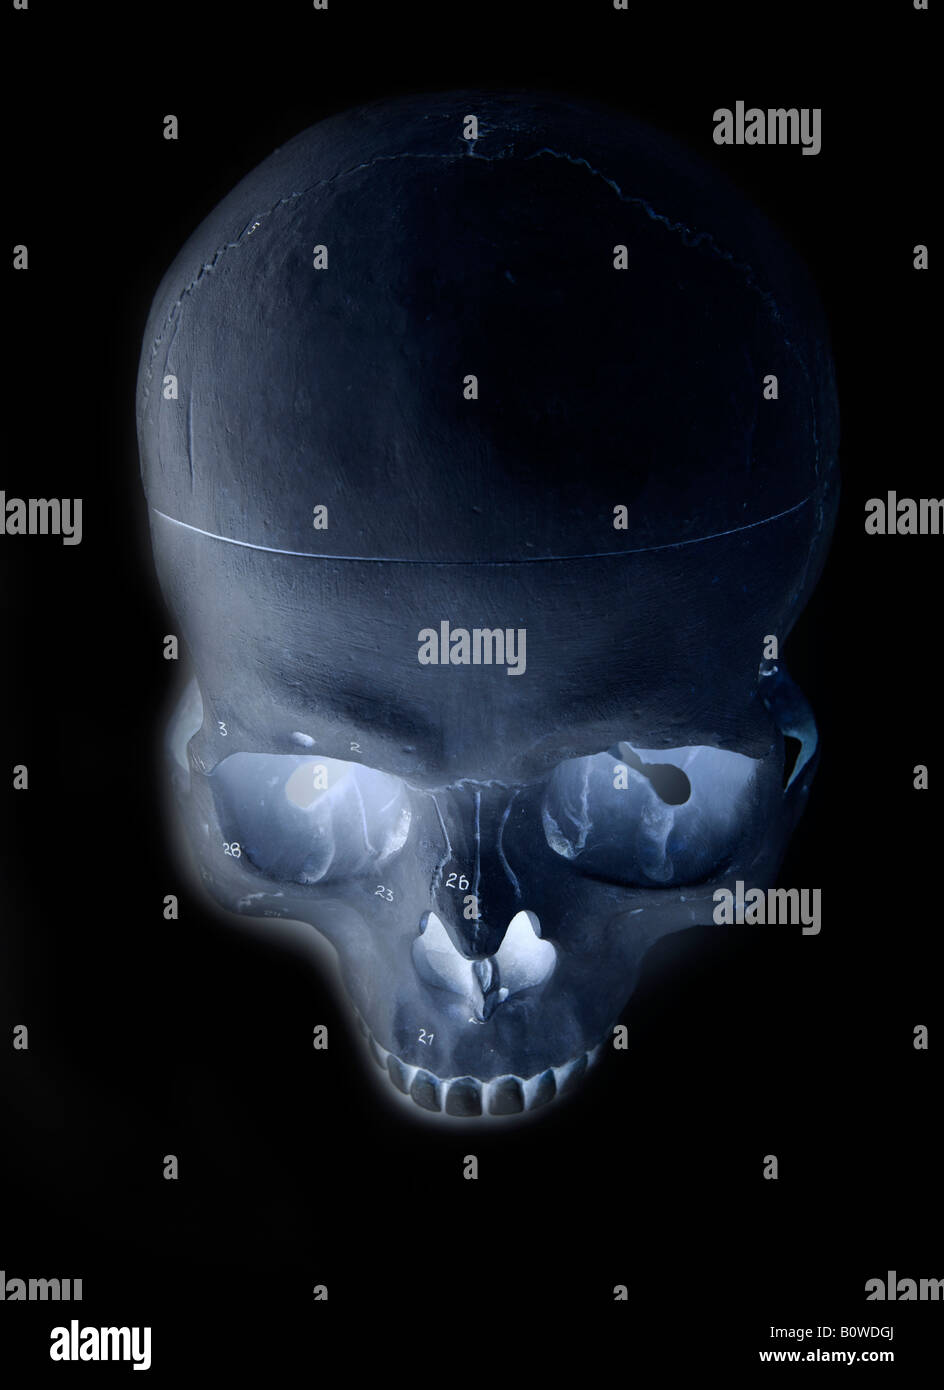 Human skull, X-ray image Stock Photo